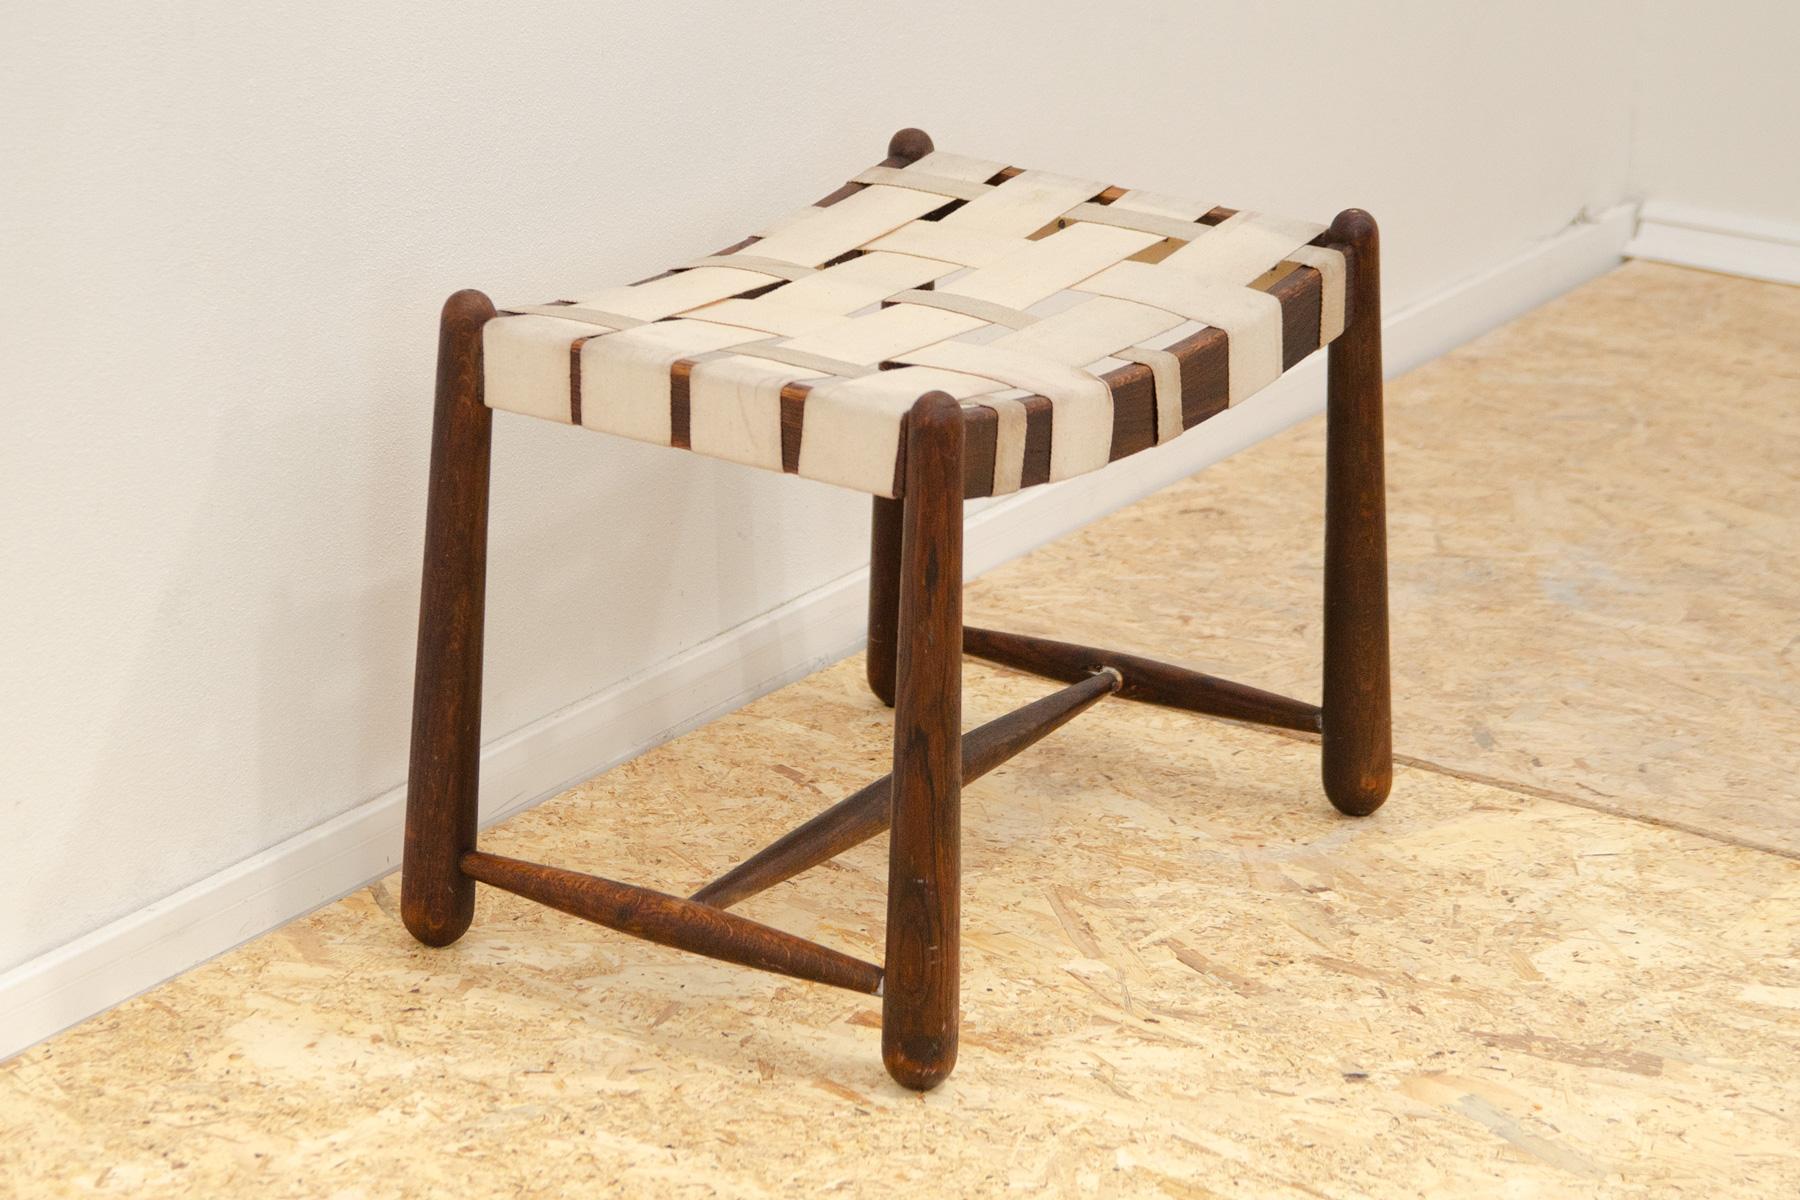 Ce tabouret/repose-pieds Vintage a été fabriqué par la société Krásná Jizba dans l'ancienne Tchécoslovaquie dans les années 1960. Ils se caractérisent par un design non conventionnel, une forme irrégulière. Il est fabriqué en bois de hêtre. Le bois